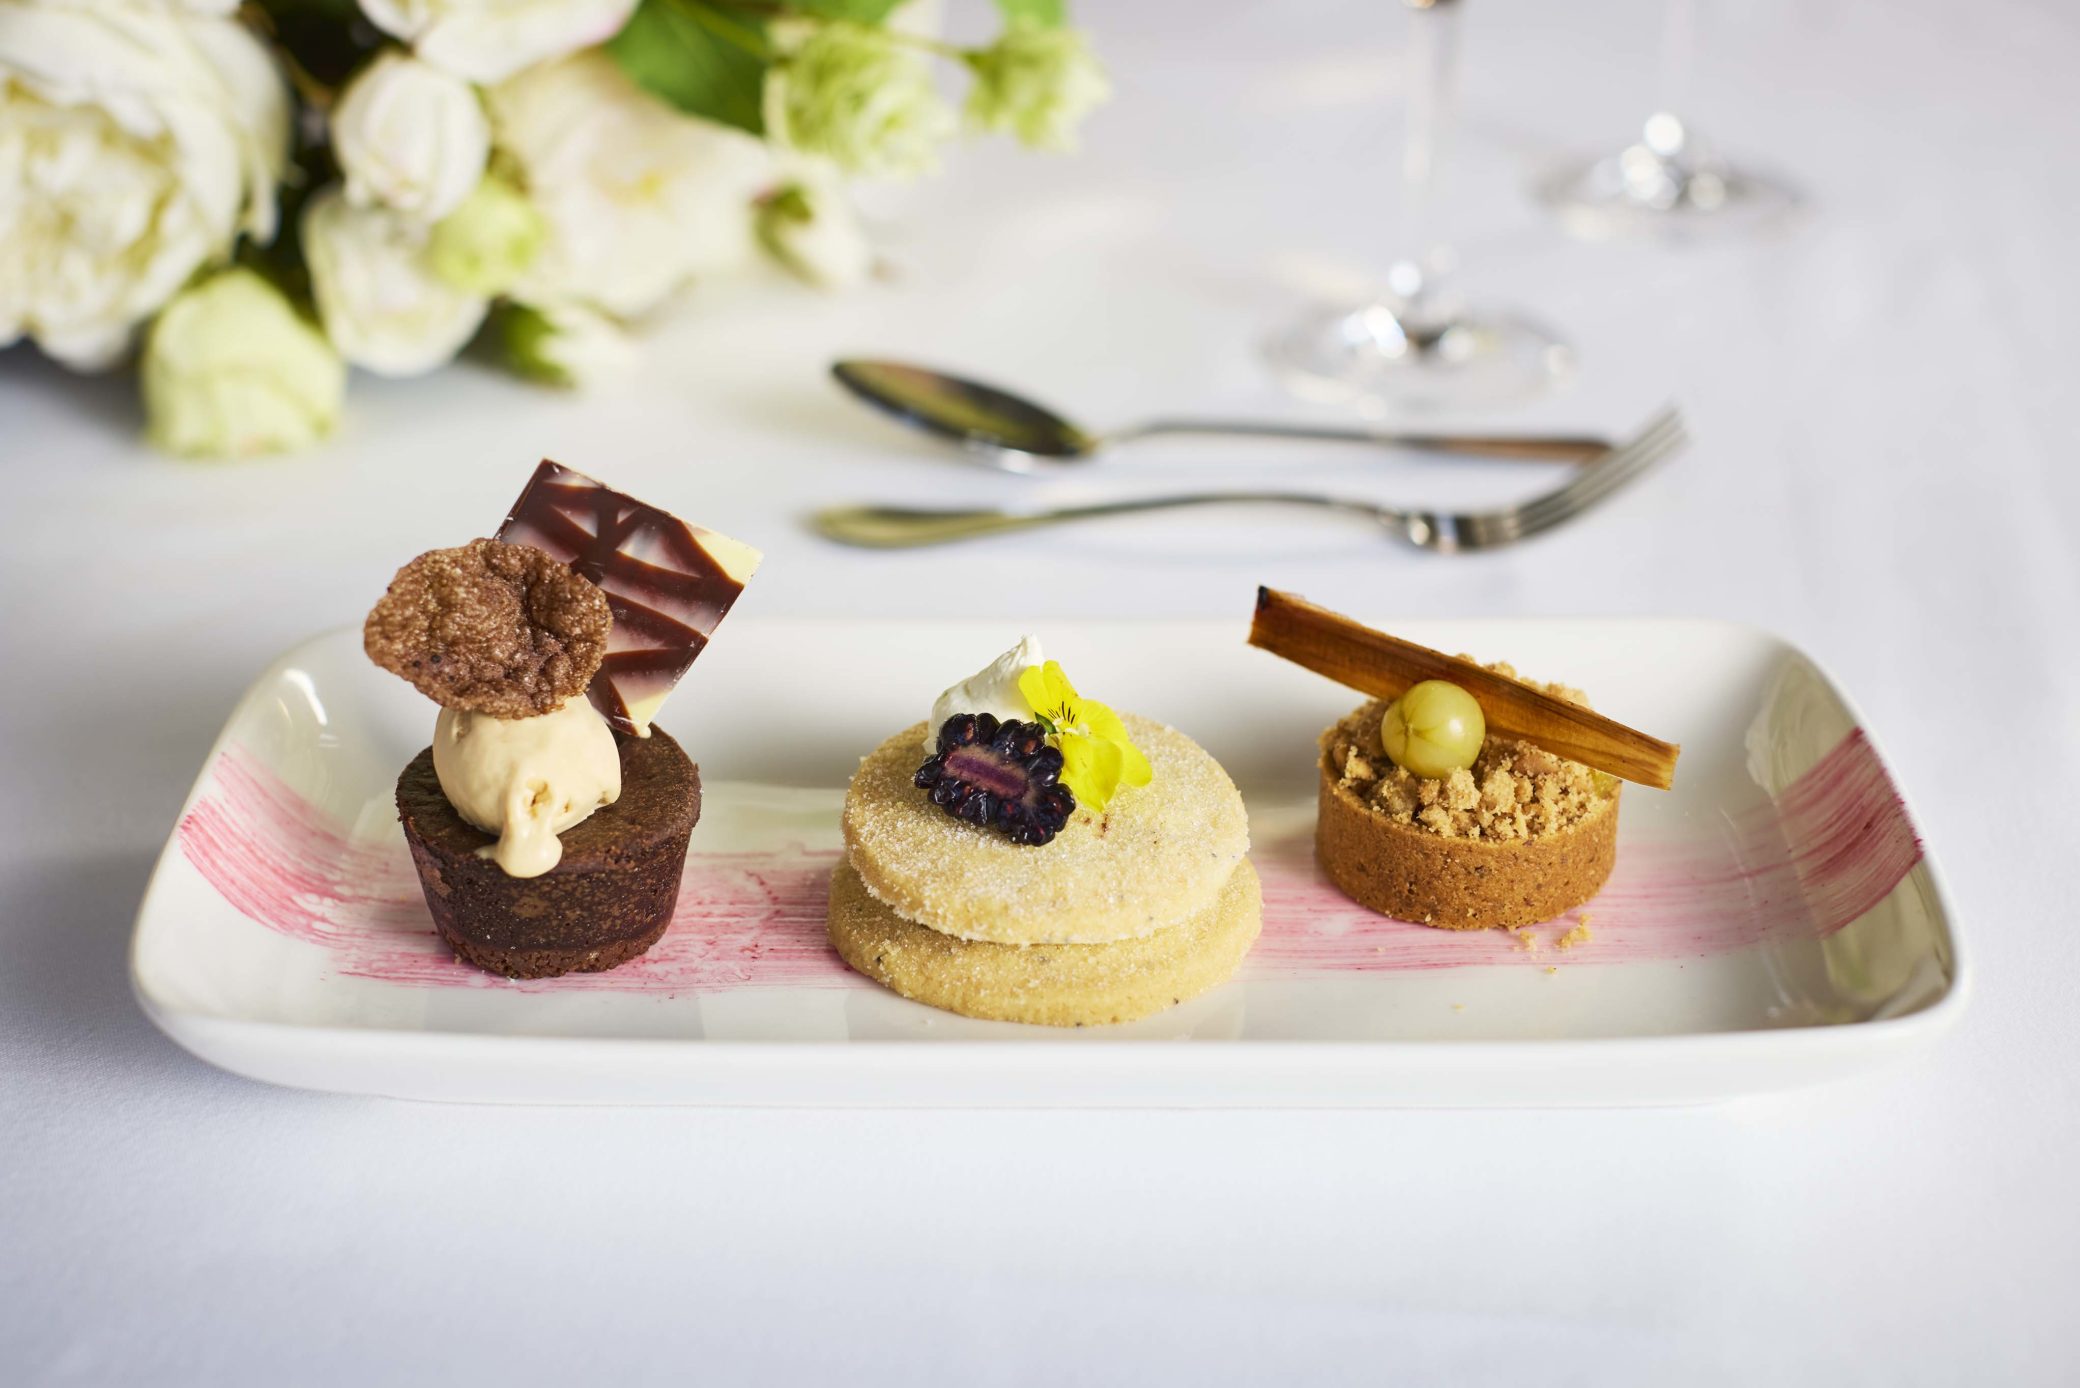 Luxury desserts at Farnham Castle in Surrey